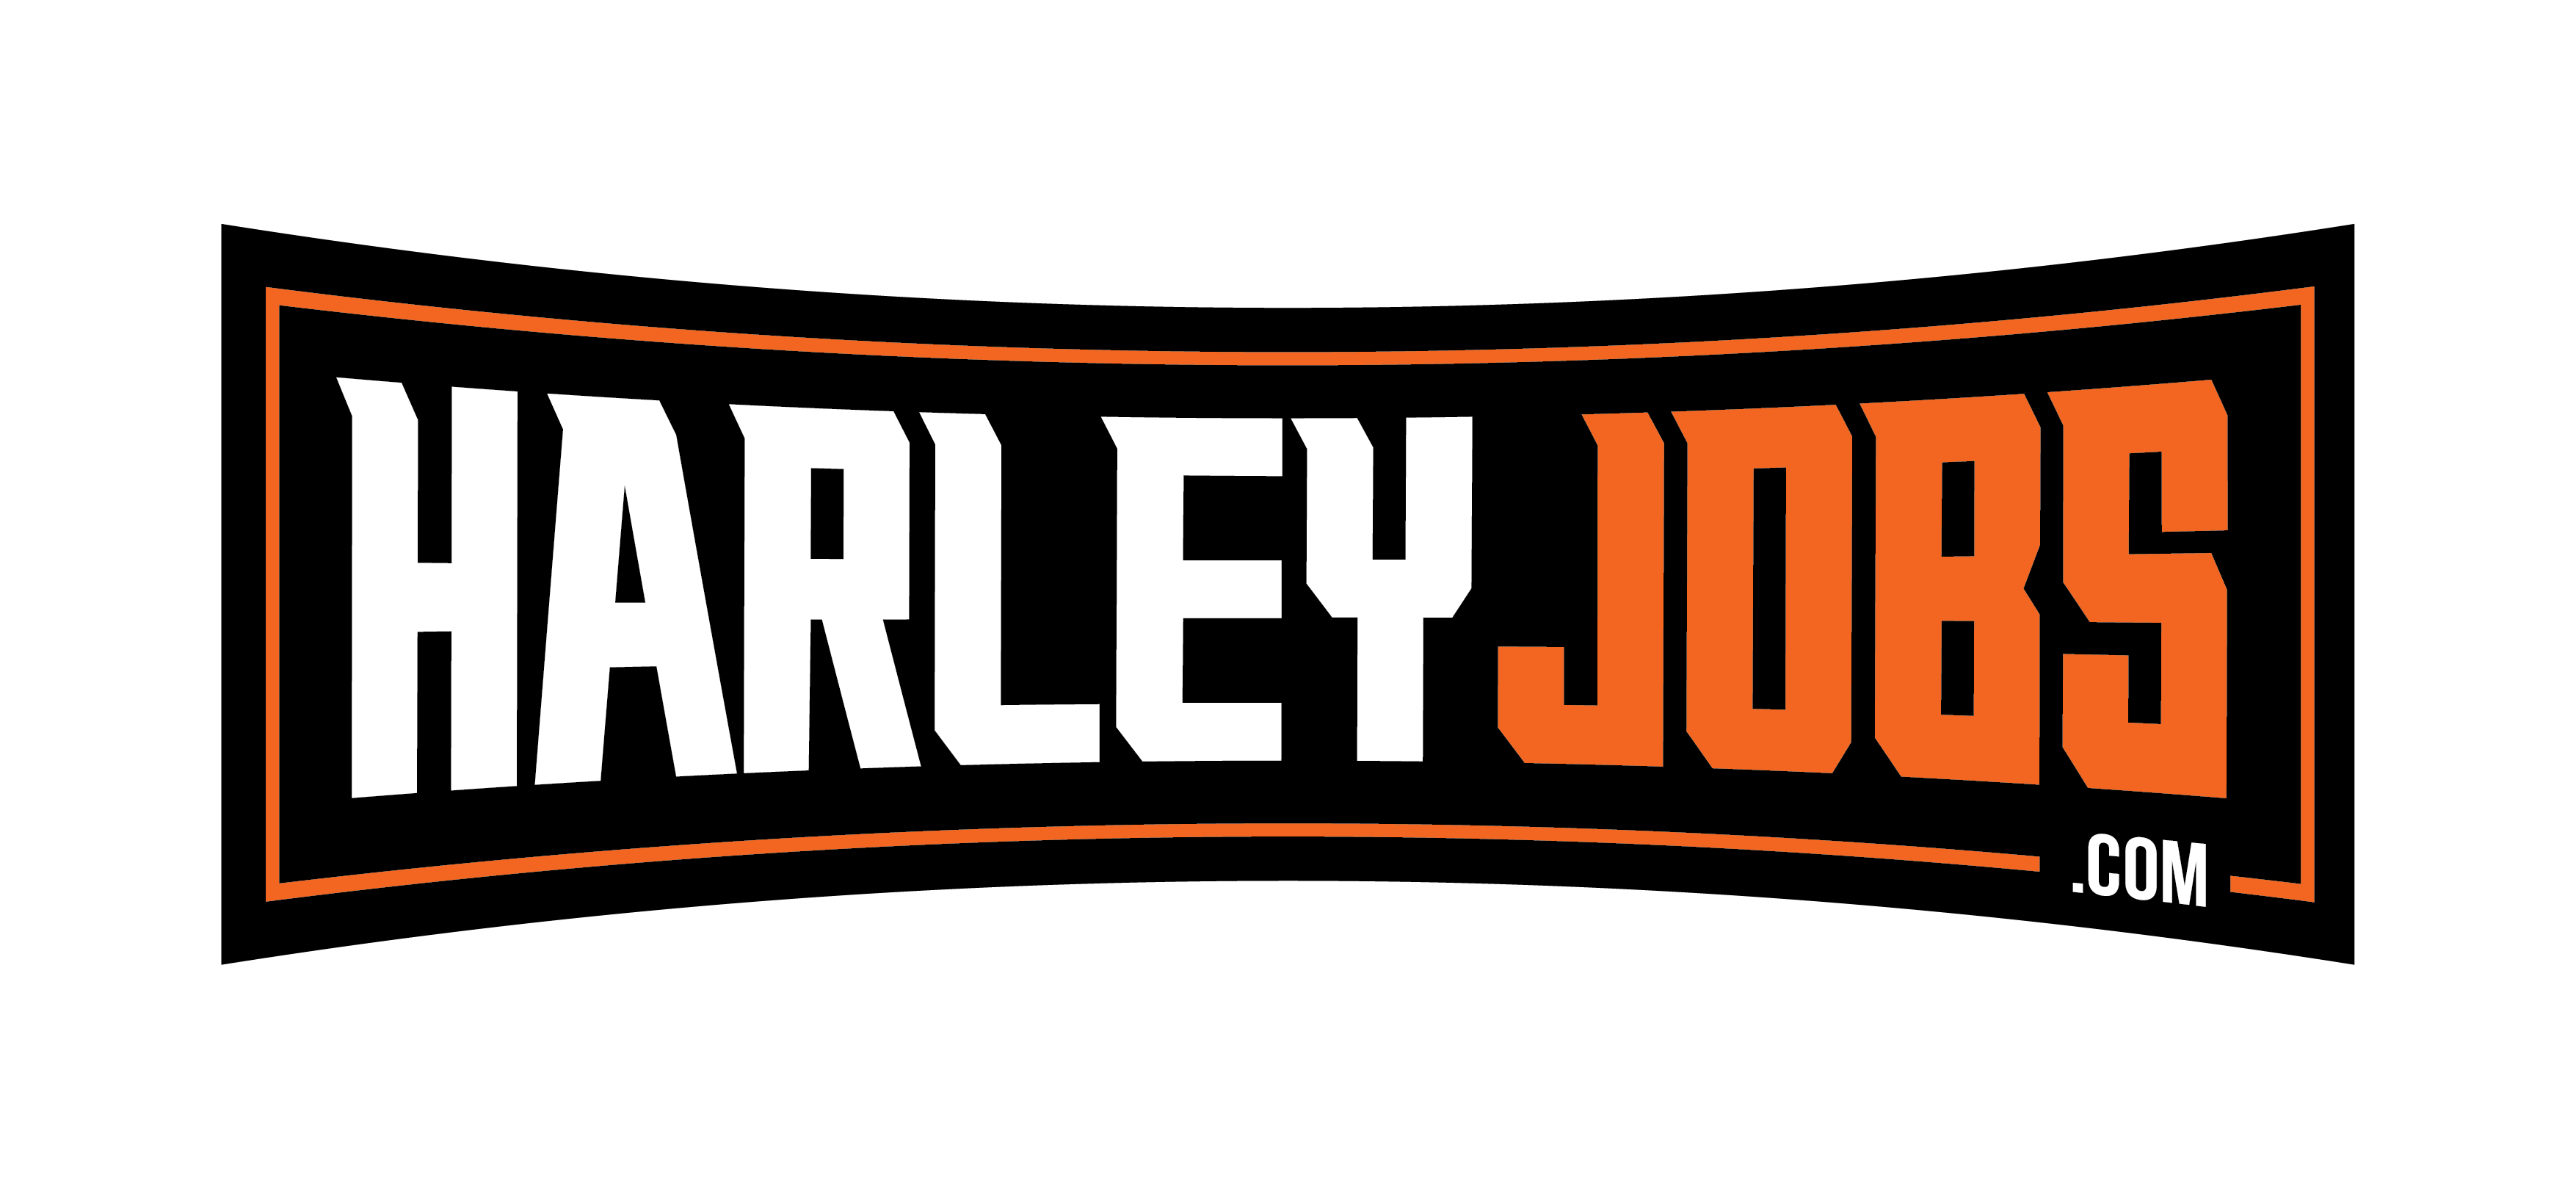 Jobs | HarleyJobs.com